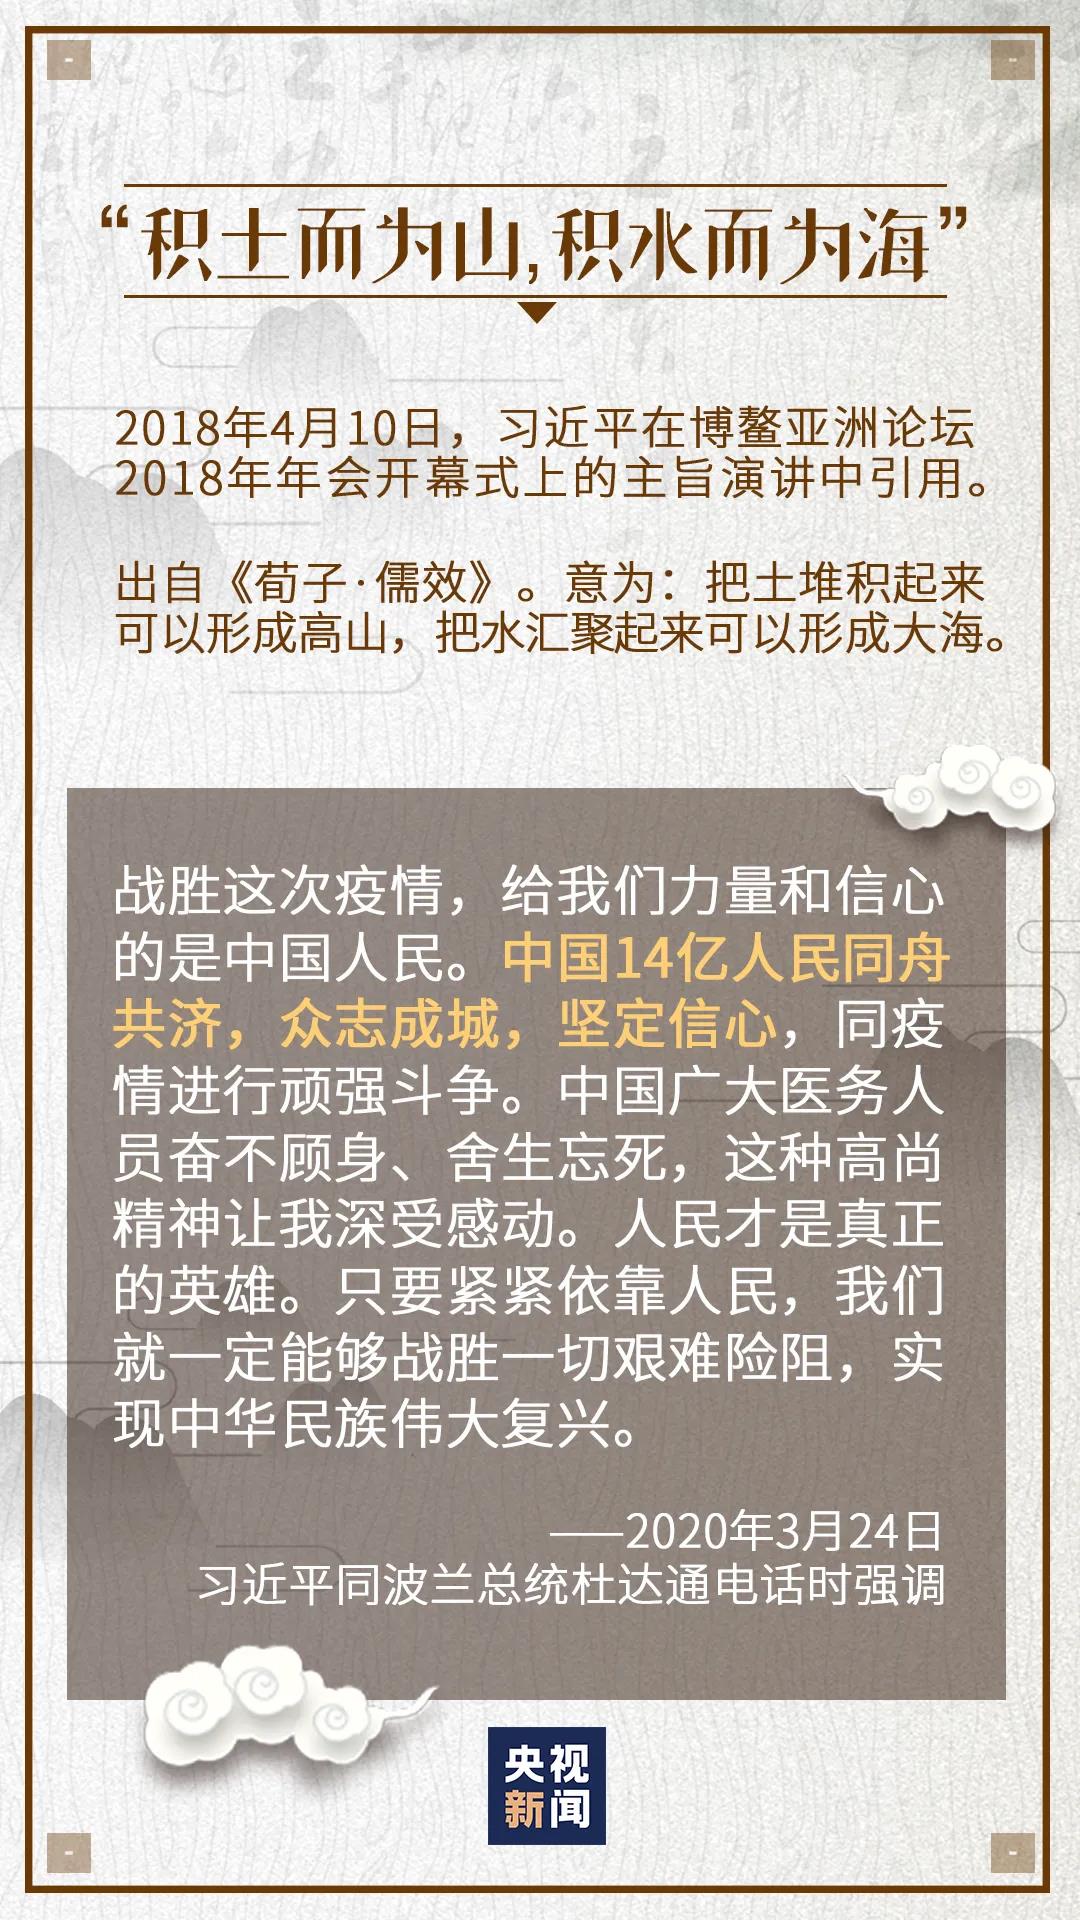 江歌妈妈为提起诉讼刘鑫耗费120万